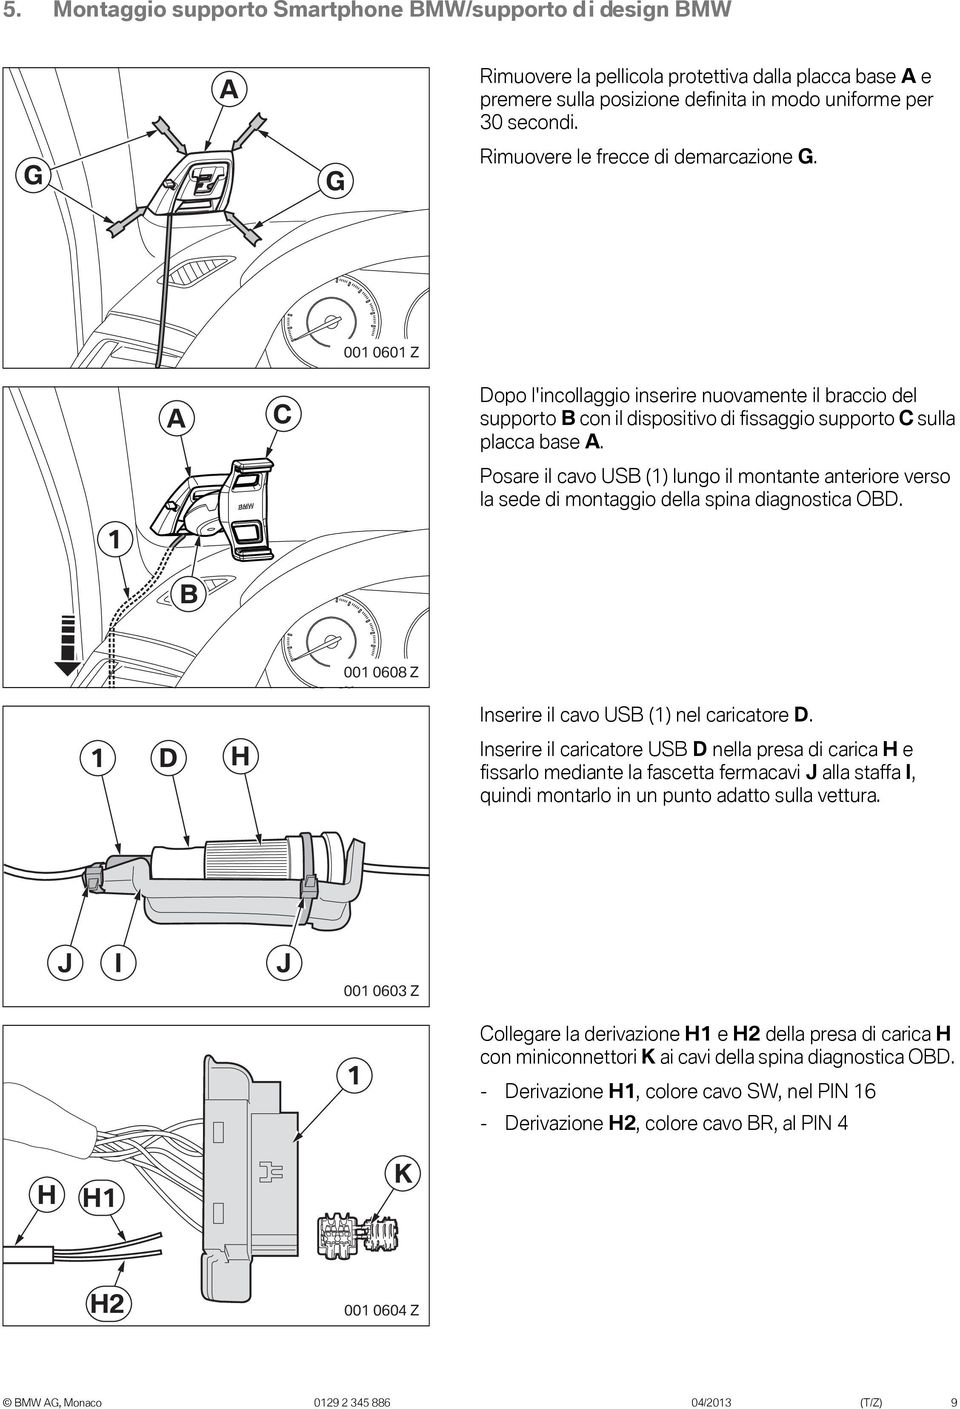 Posare il cavo USB (1) lungo il montante anteriore verso la sede di montaggio della spina diagnostica OBD. 1 B 001 0608 Z Inserire il cavo USB (1) nel caricatore D.